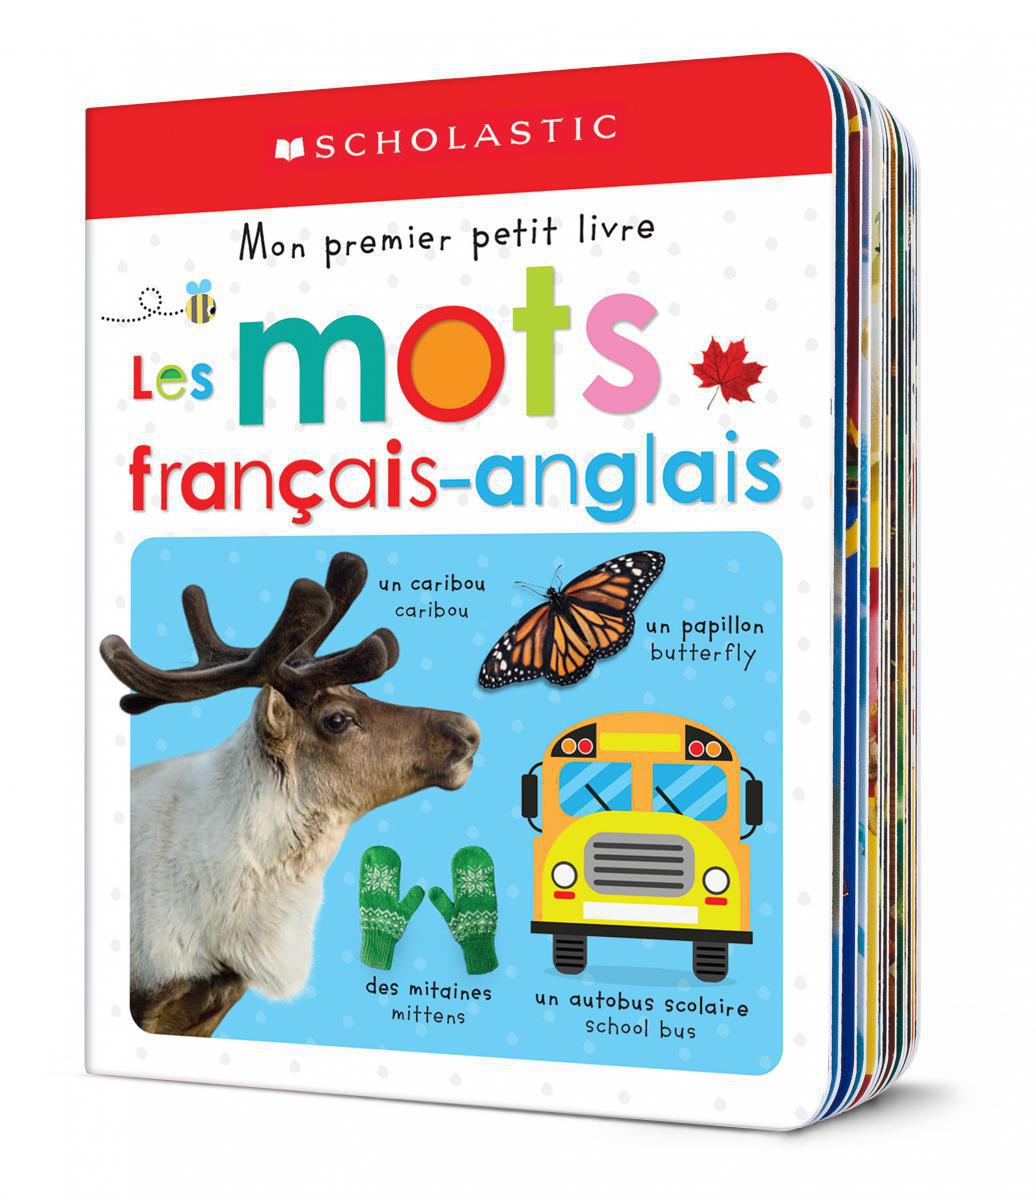  Mon premier petit livre : Les mots français-anglais 